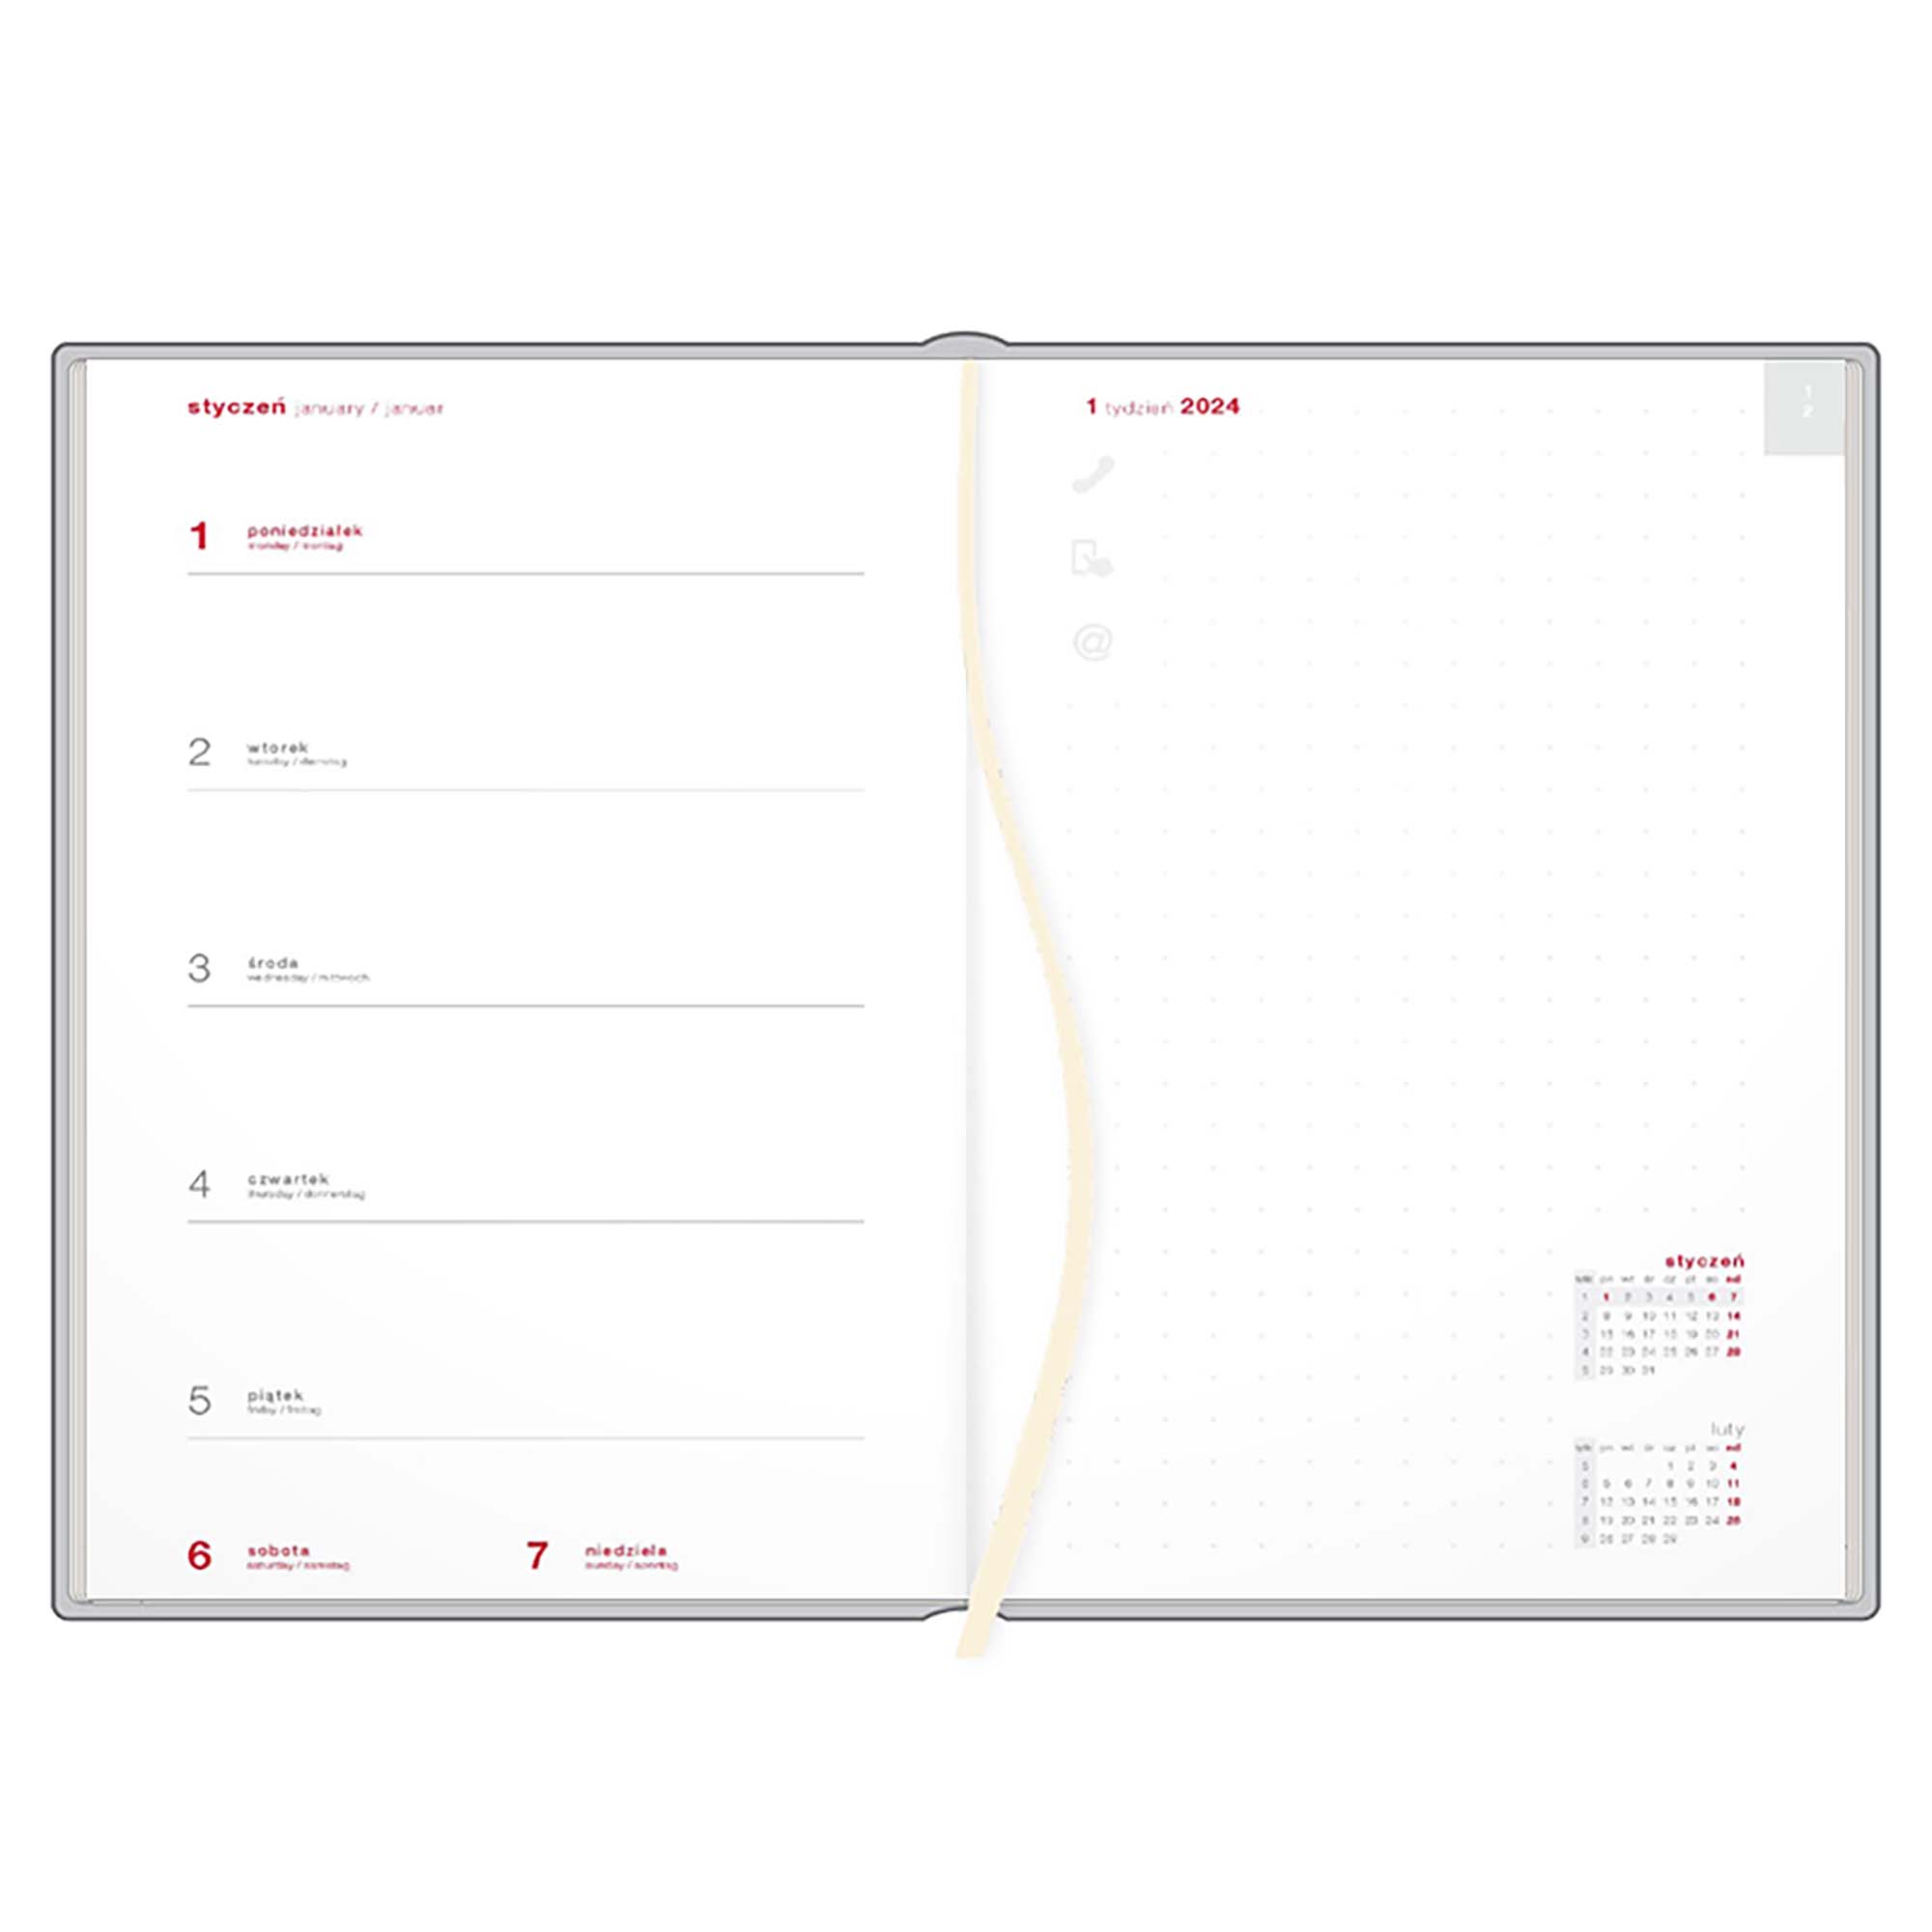 Kalendarz książkowy B5 tygodniowy z notesem, Victoria, czerwono-niebieski